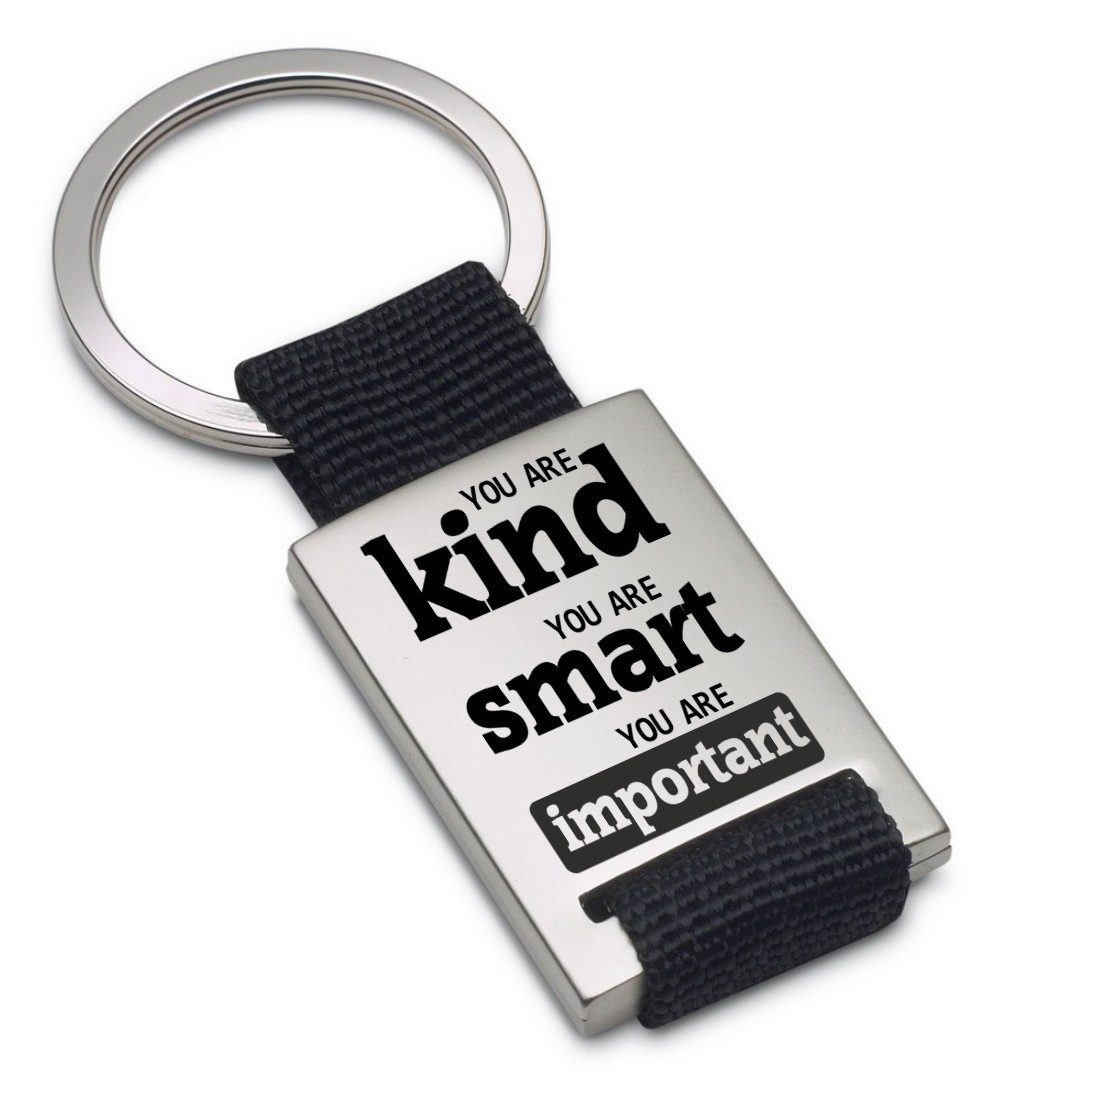 Lieblingsmensch Schlüsselanhänger You are kind - You are smart... - ein tolles Geschenk &Glücksbringer (Schlüsselanhänger mit Gravur, inklusive Schlüsselring), Robuste und filigrane Lasergravur